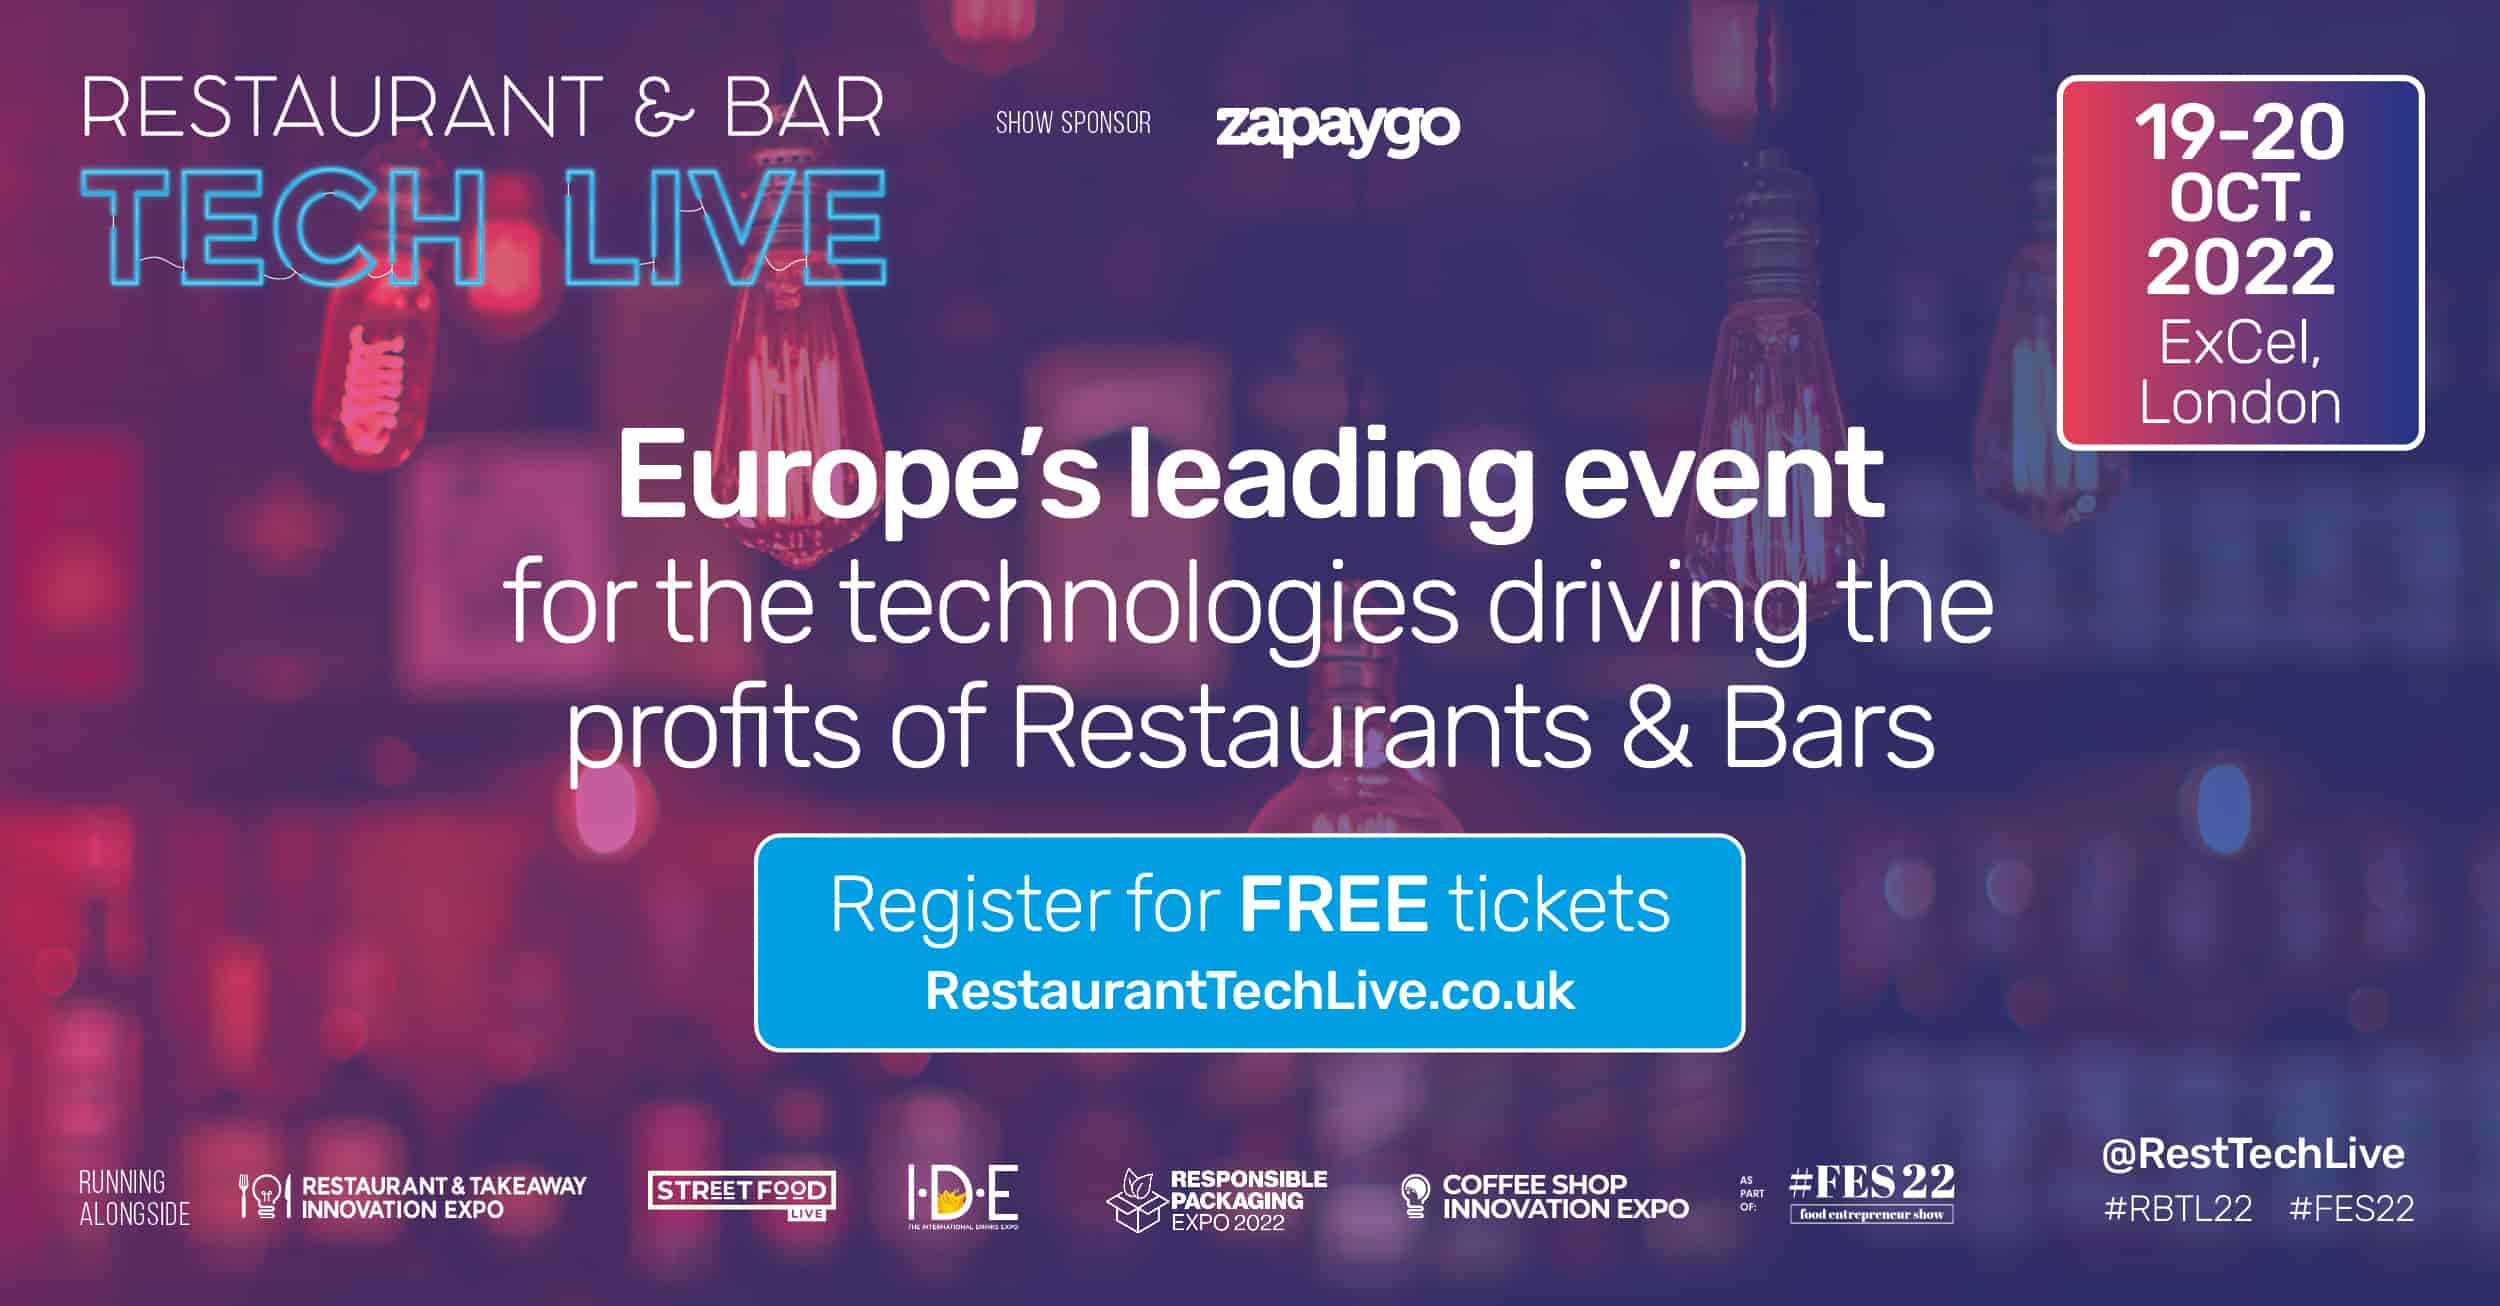 Restaurant & Bar Tech Live